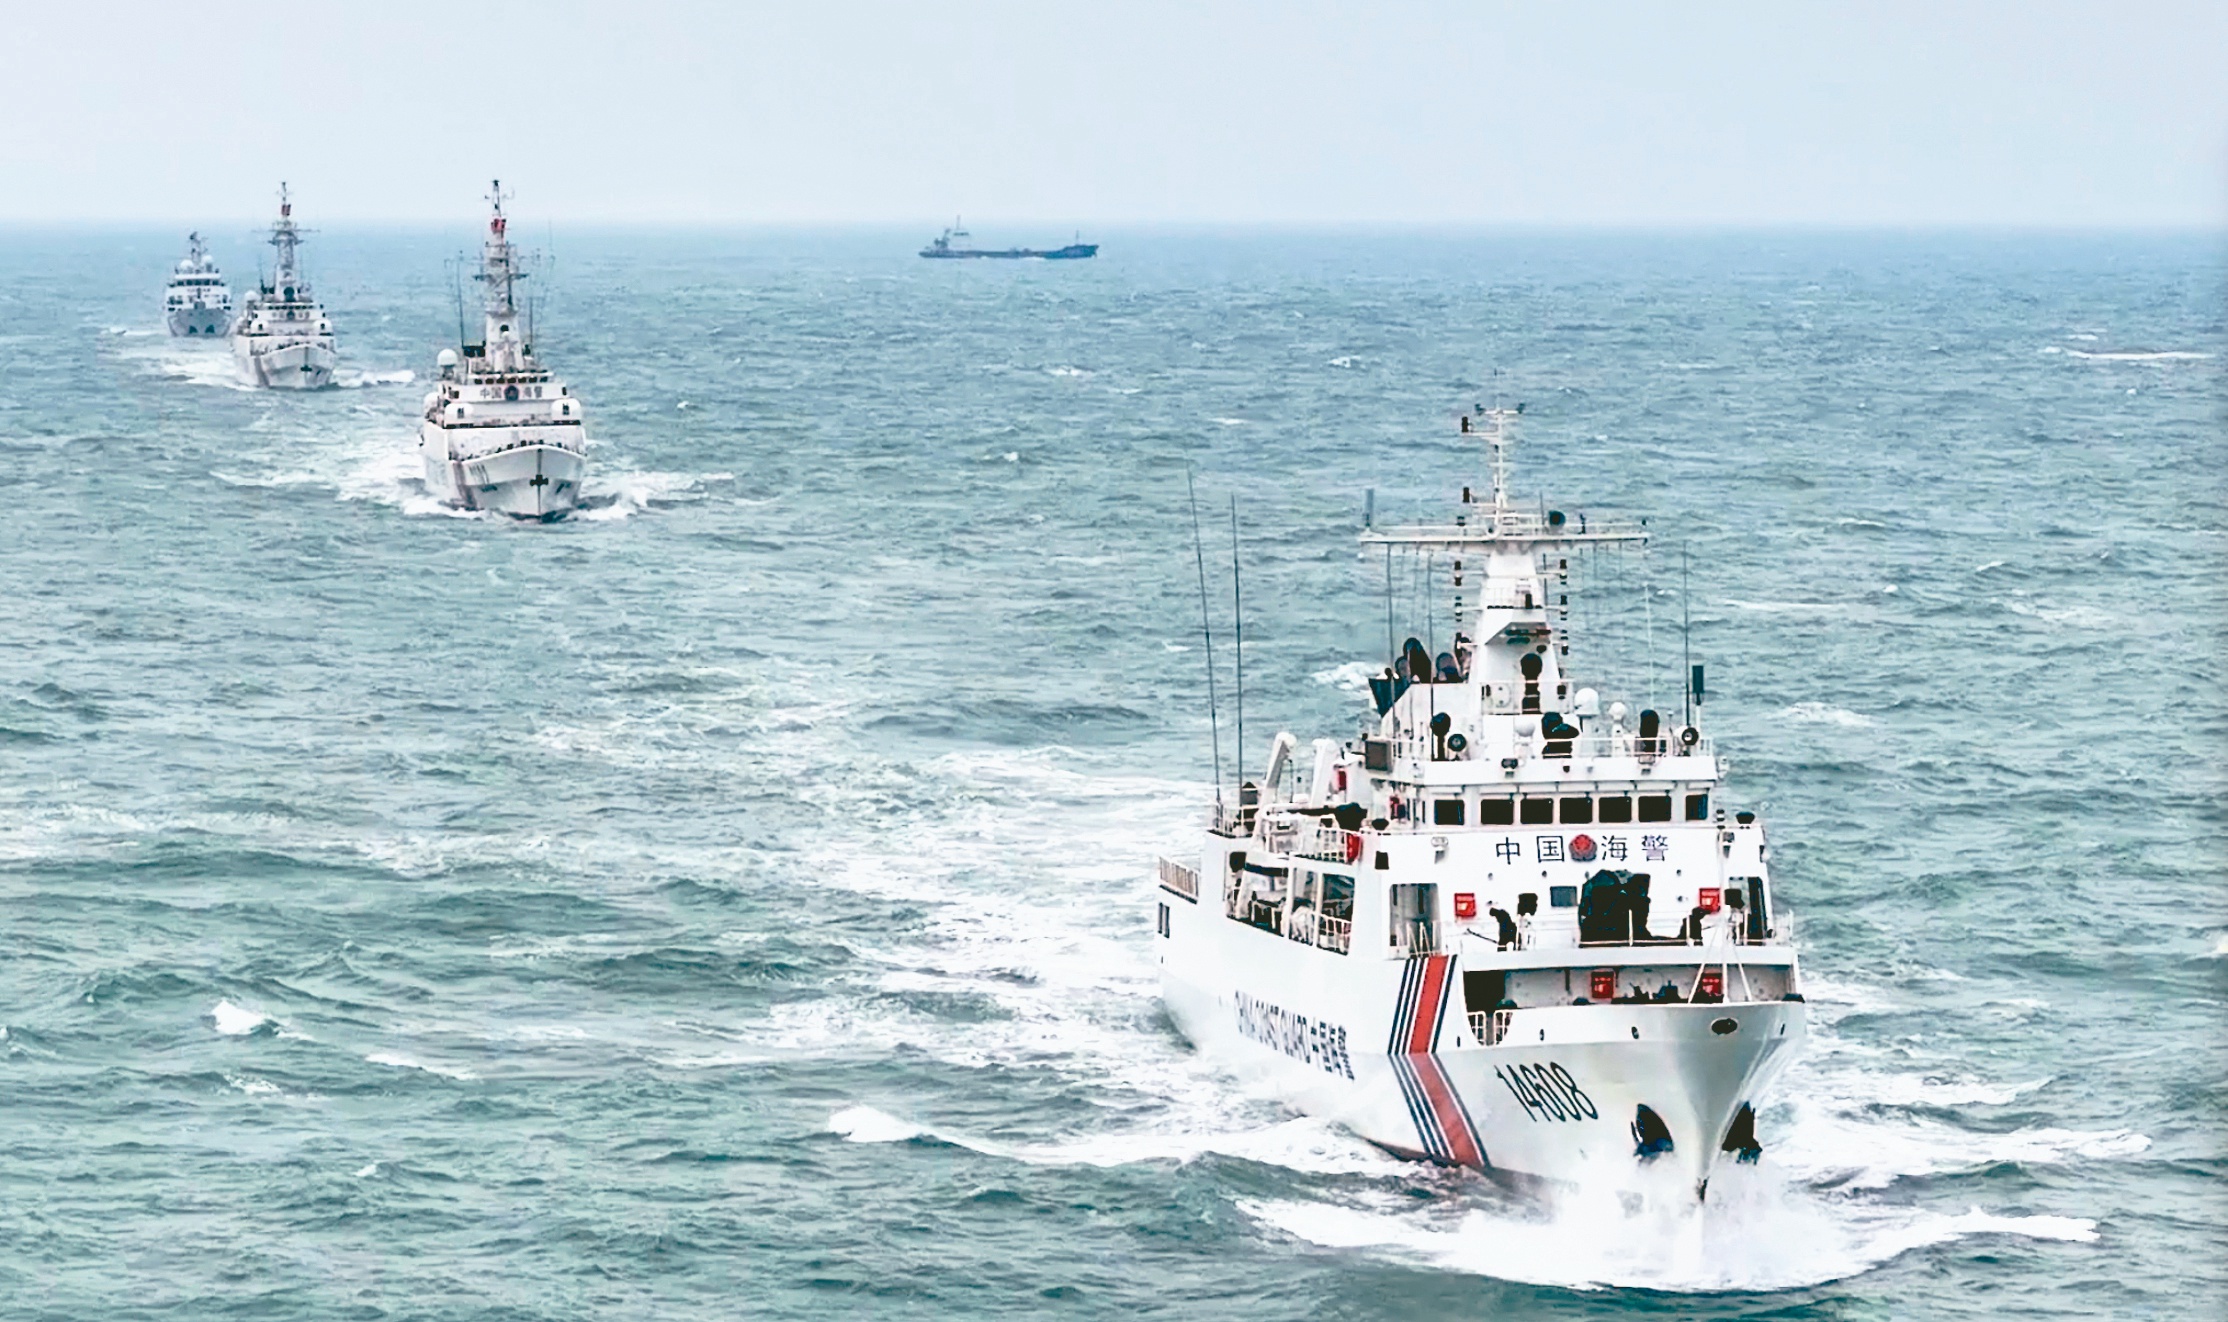 大陆海警15日发布，福建海警组织舰艇编队在金门附近水域「执法巡查」。图为上月底在金门水域的大陆海警舰艇。(取自大陆海警官网)